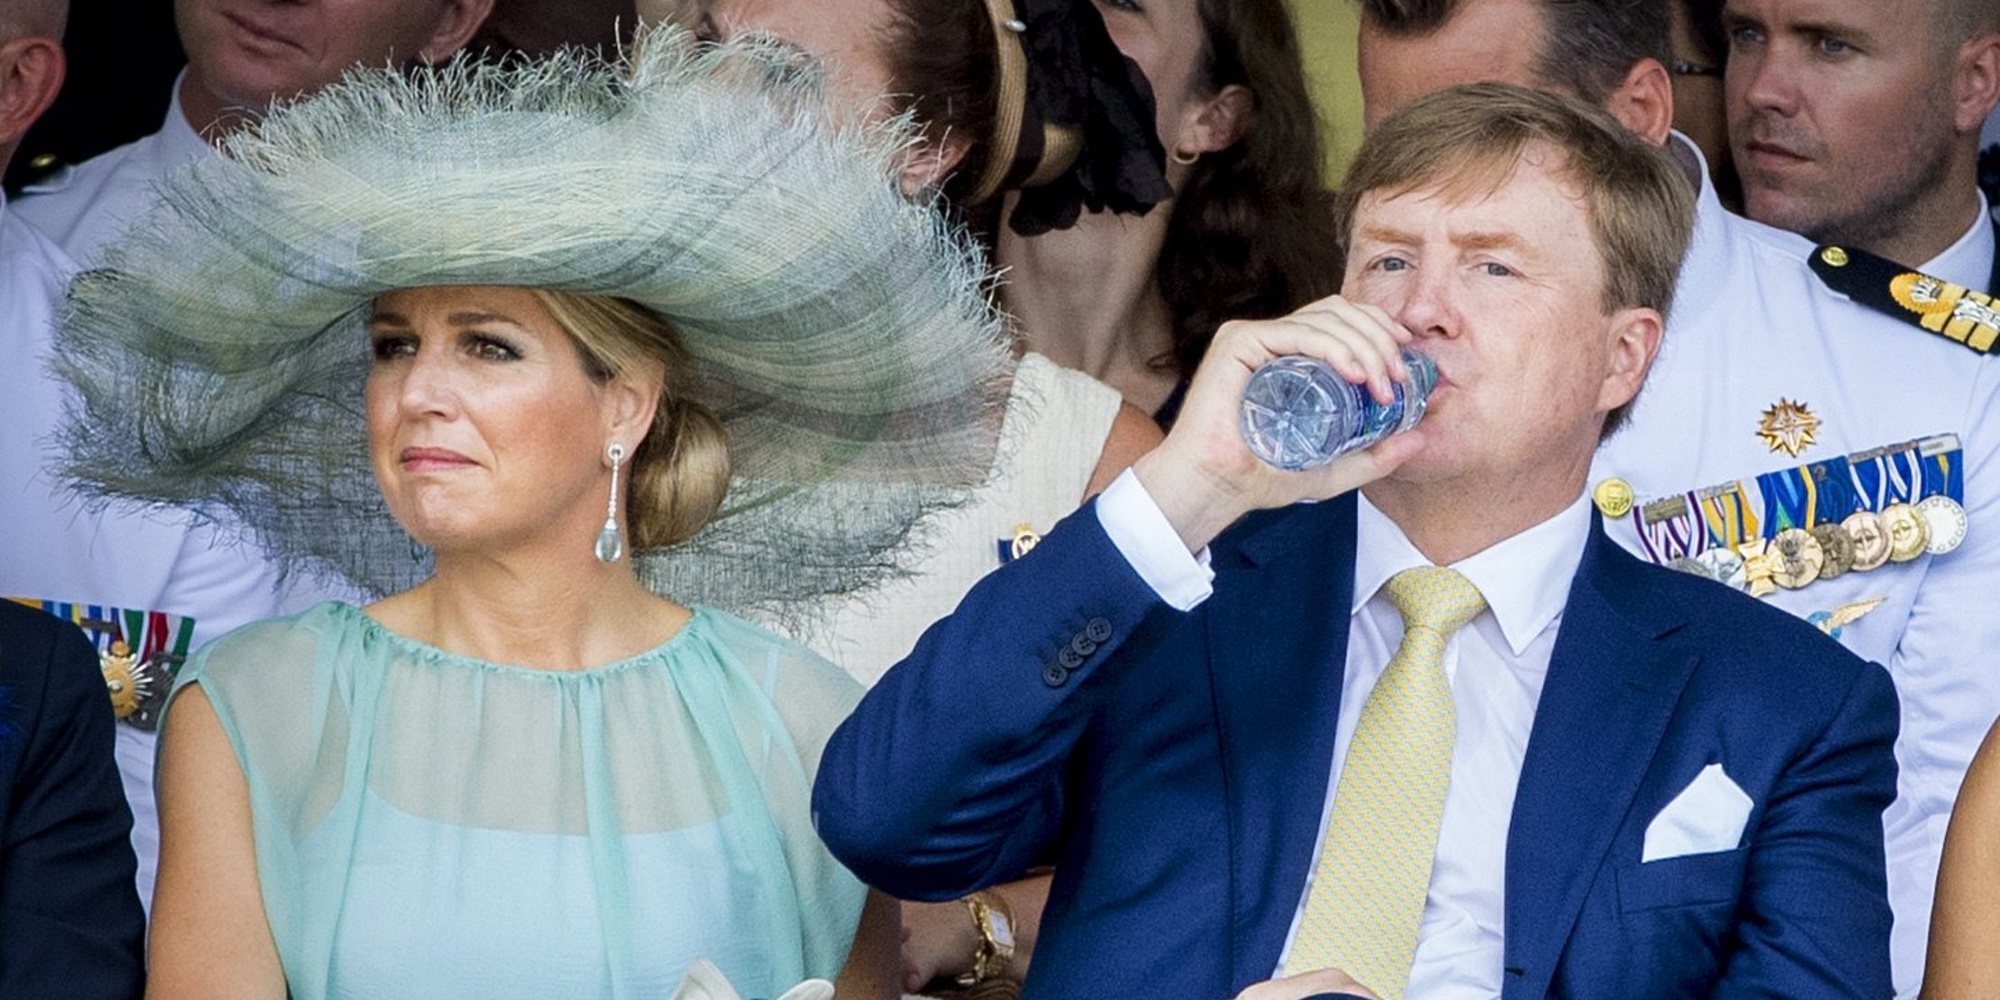 La Familia Real de Holanda, desbordada por la polémica: de un costoso palacio a una polémica subasta